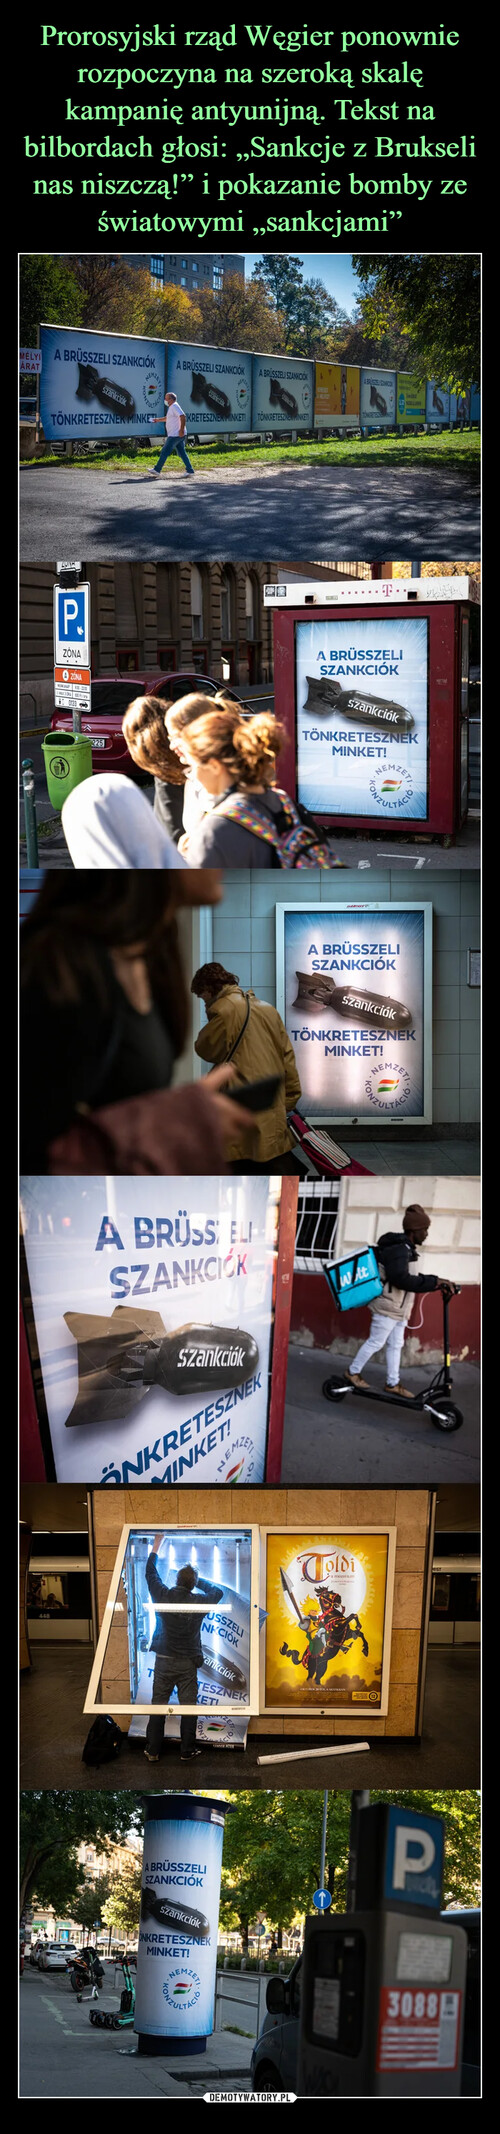 Prorosyjski rząd Węgier ponownie rozpoczyna na szeroką skalę kampanię antyunijną. Tekst na bilbordach głosi: „Sankcje z Brukseli nas niszczą!” i pokazanie bomby ze światowymi „sankcjami”